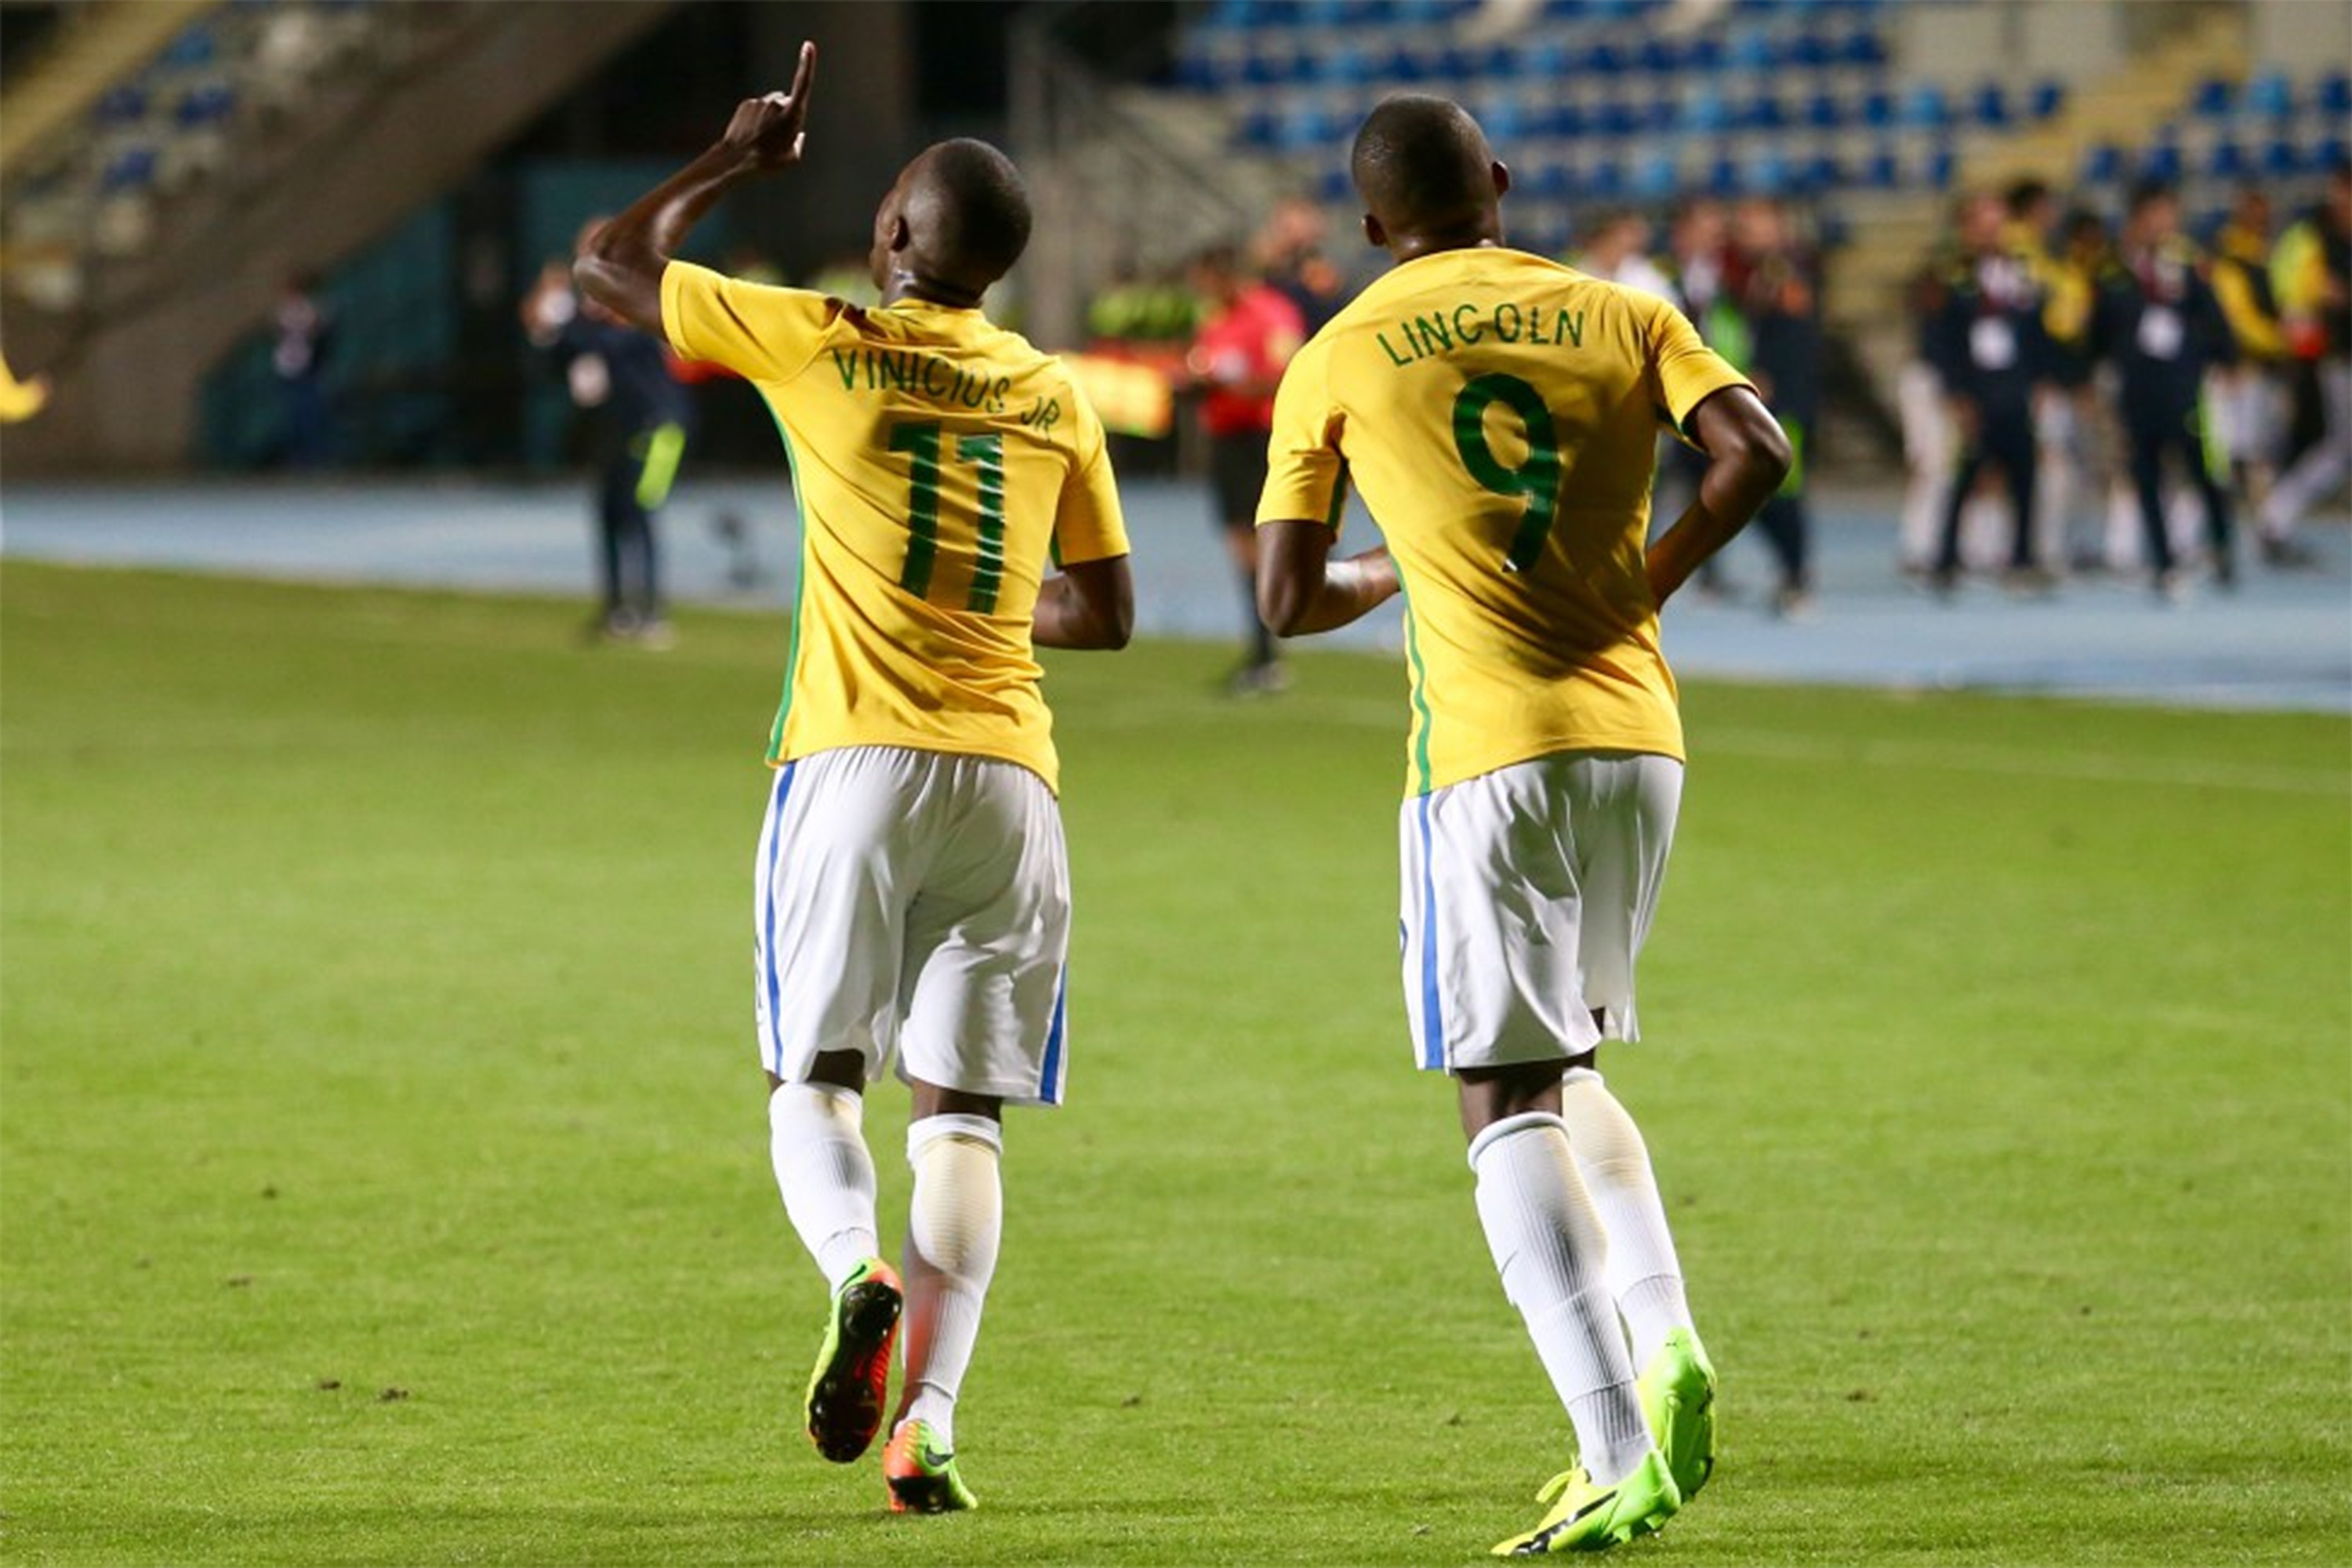 Brasil goleia Chile e é campeão sul-americano sub-17 - Placar - O futebol  sem barreiras para você